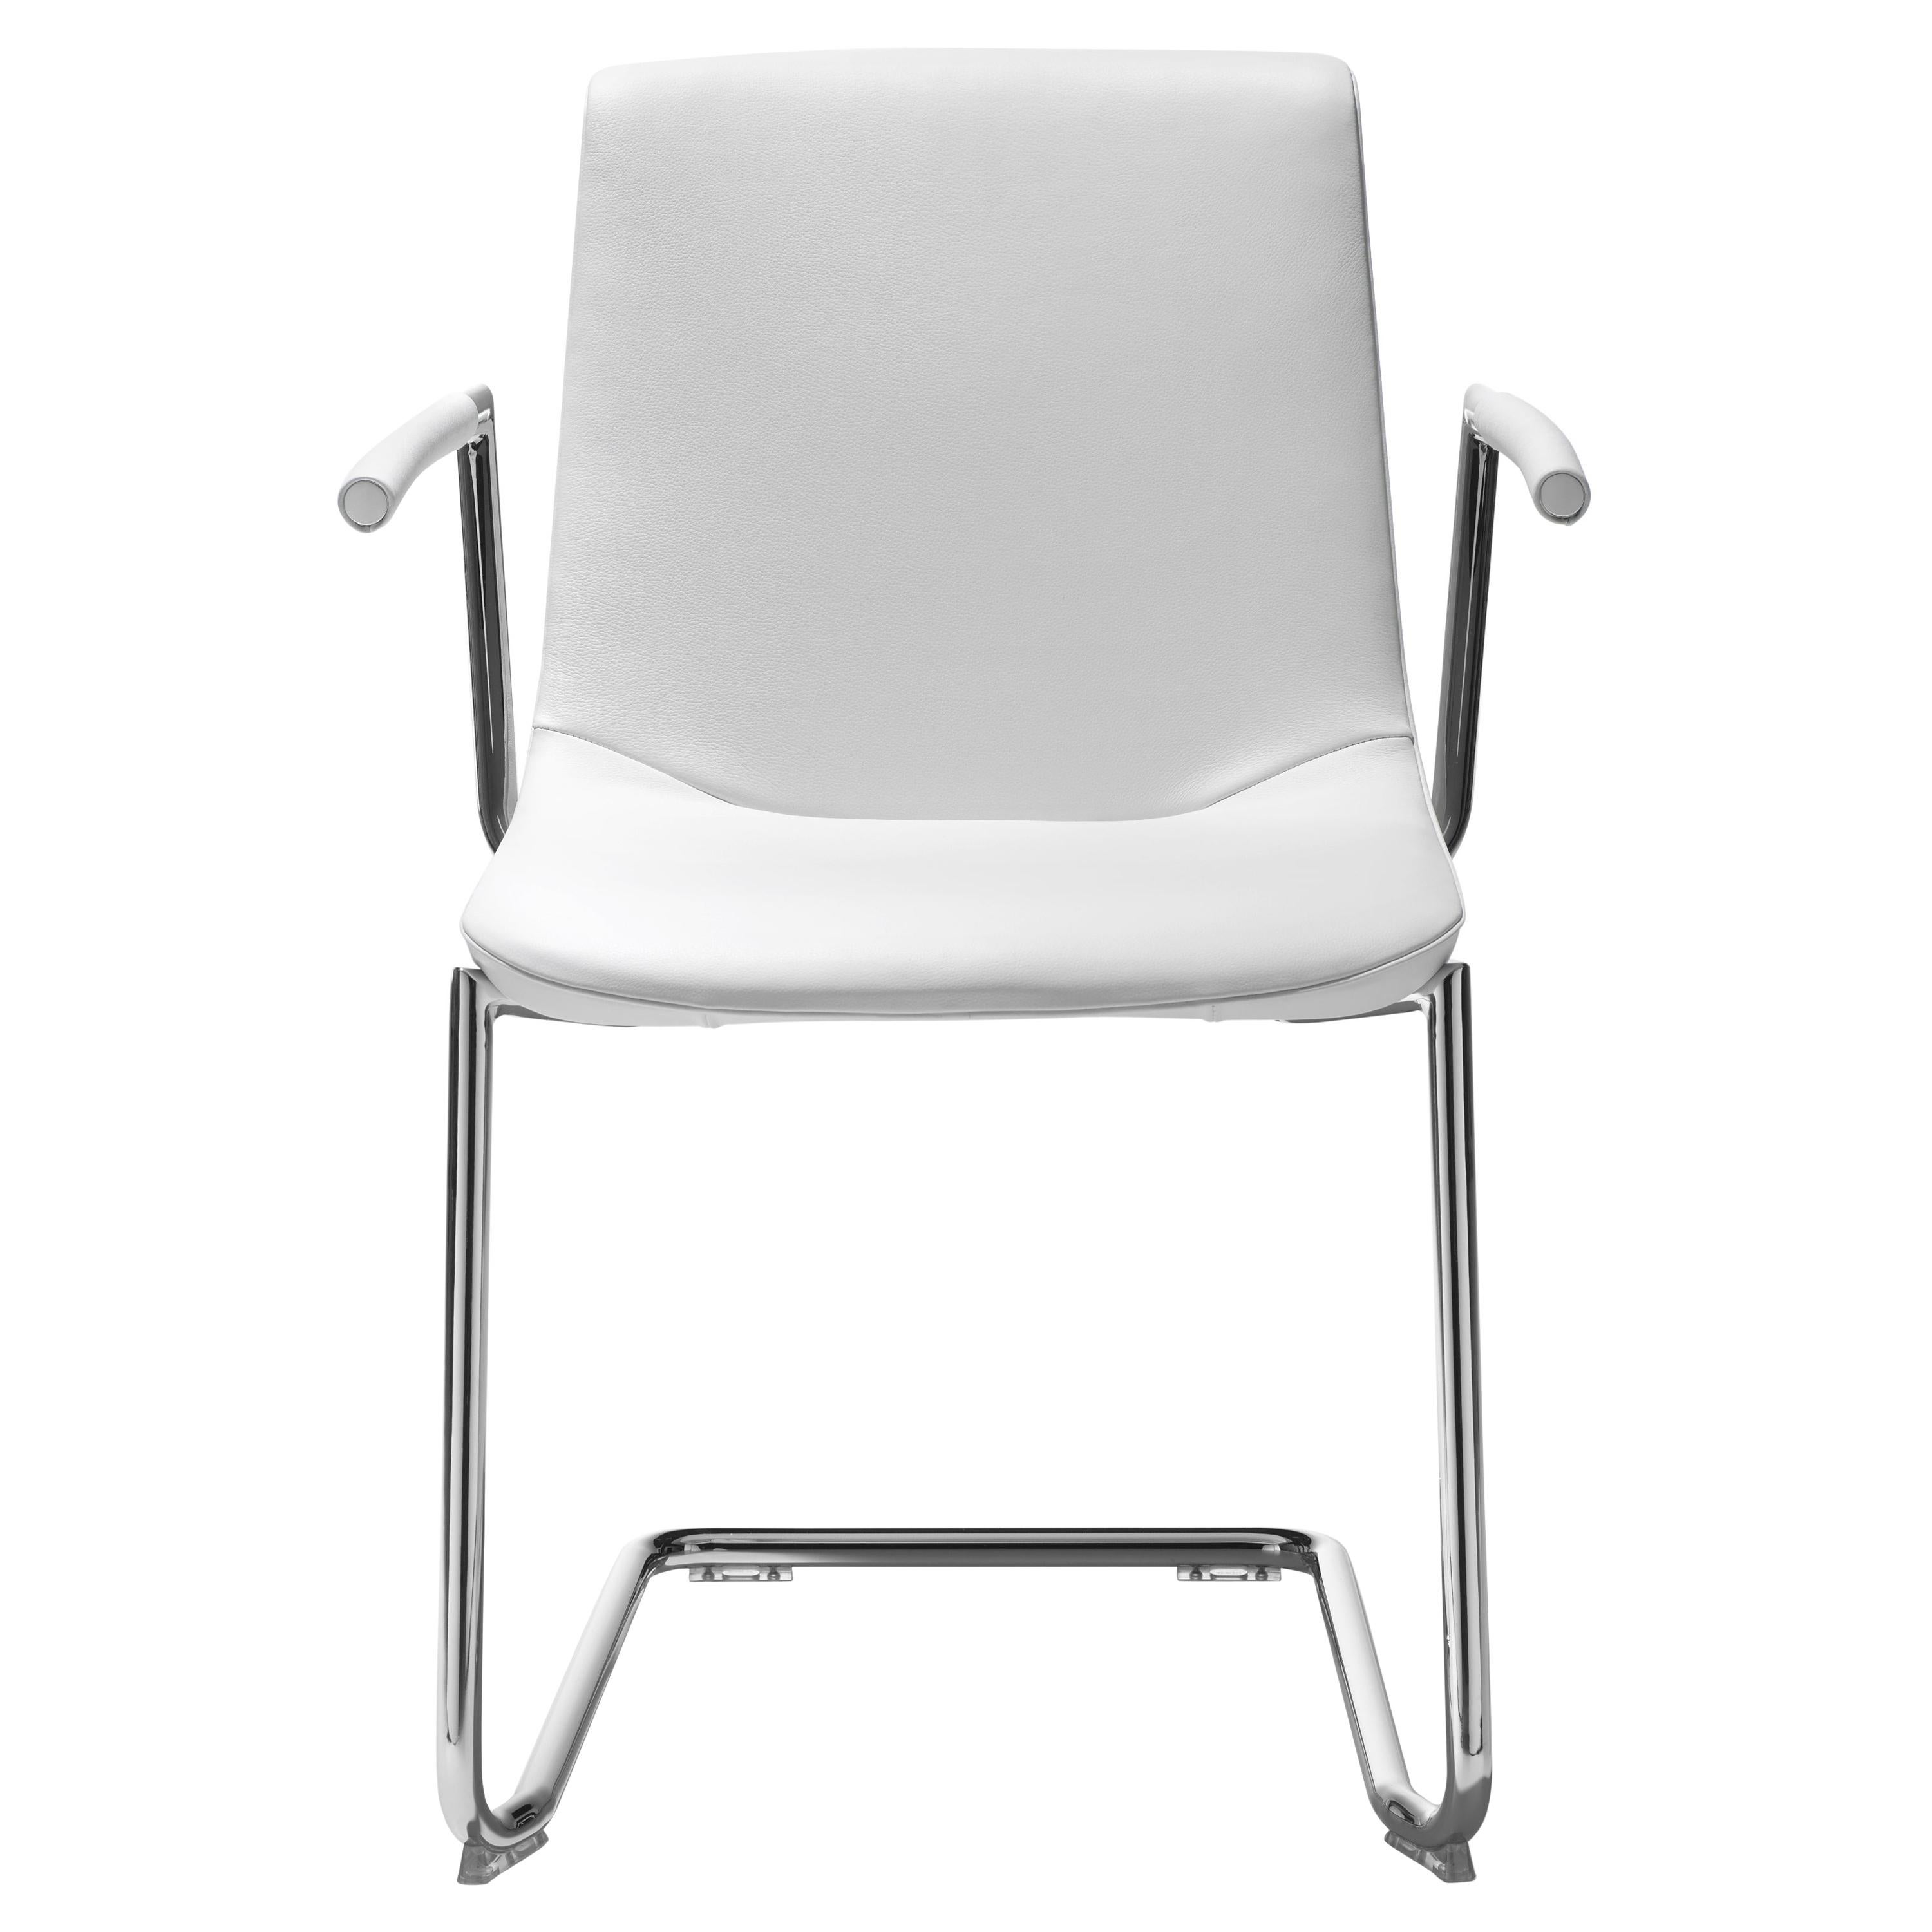 DS-718 Chair by De Sede